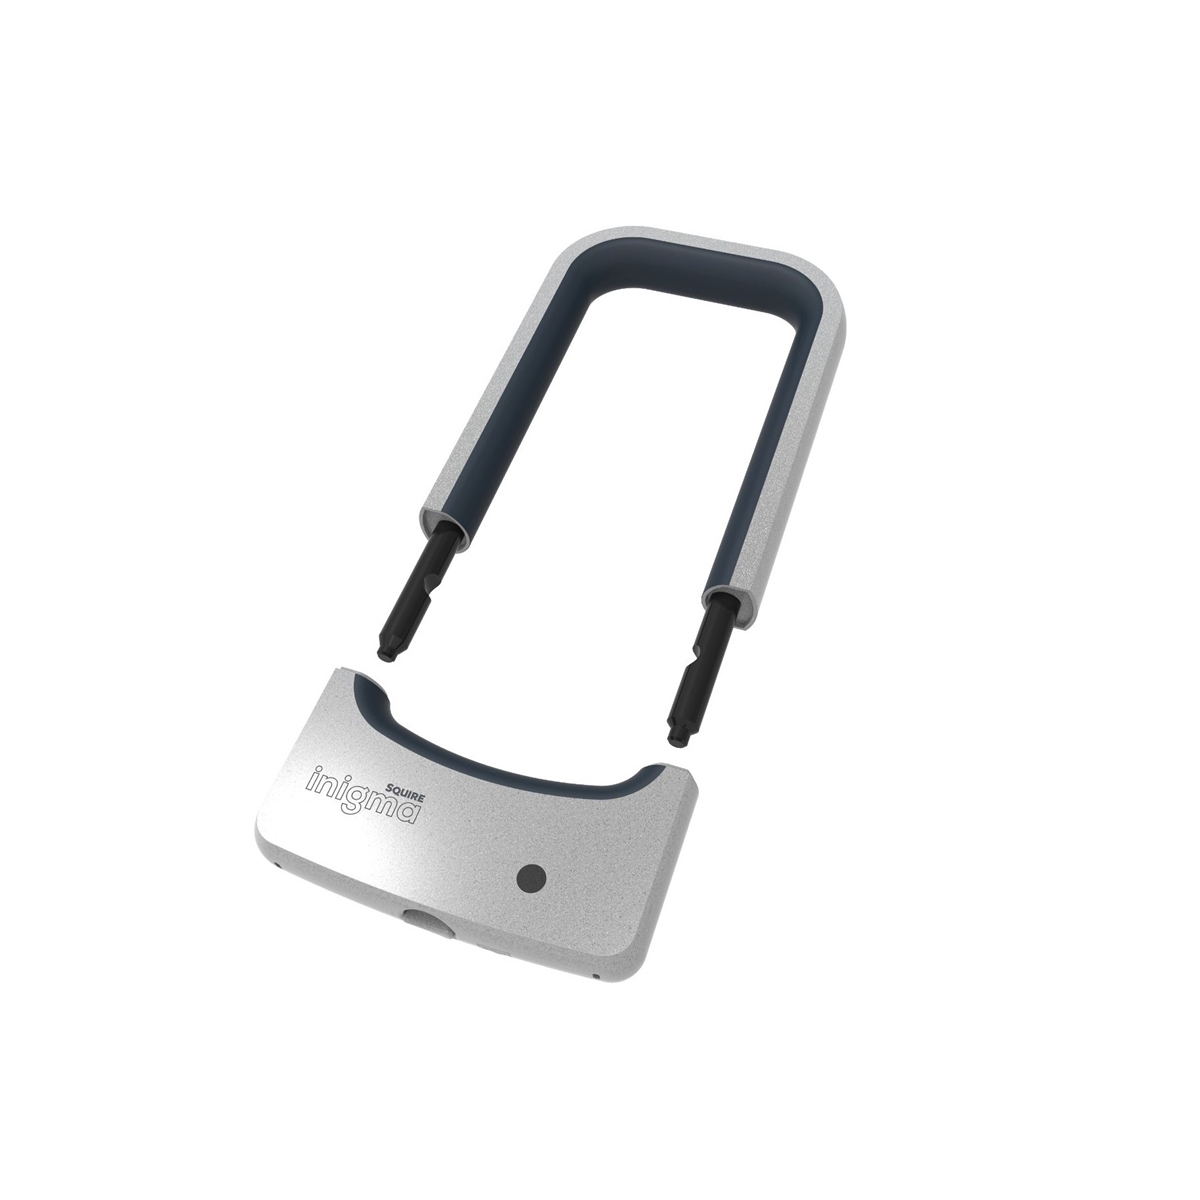 Bluetooth Bikelock Inigma BL1 190mm öffnen / schließen mit Smartphone